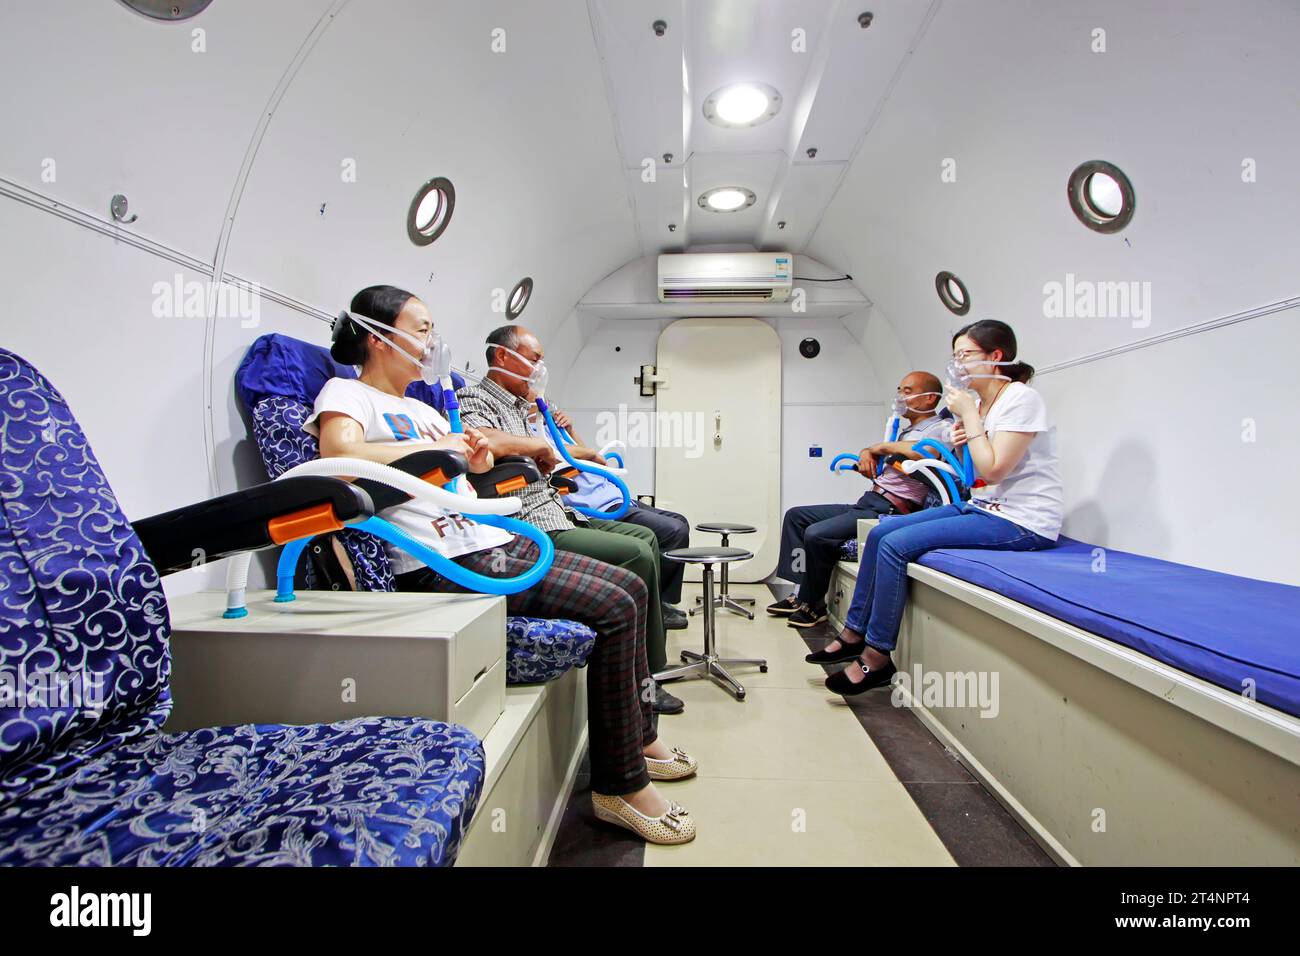 Luannan - giugno 29: Pazienti che indossano maschere per ossigeno, nella camera di ossigeno iperbarica, il 29 giugno 2015, contea luannana, provincia di hebei, Cina Foto Stock